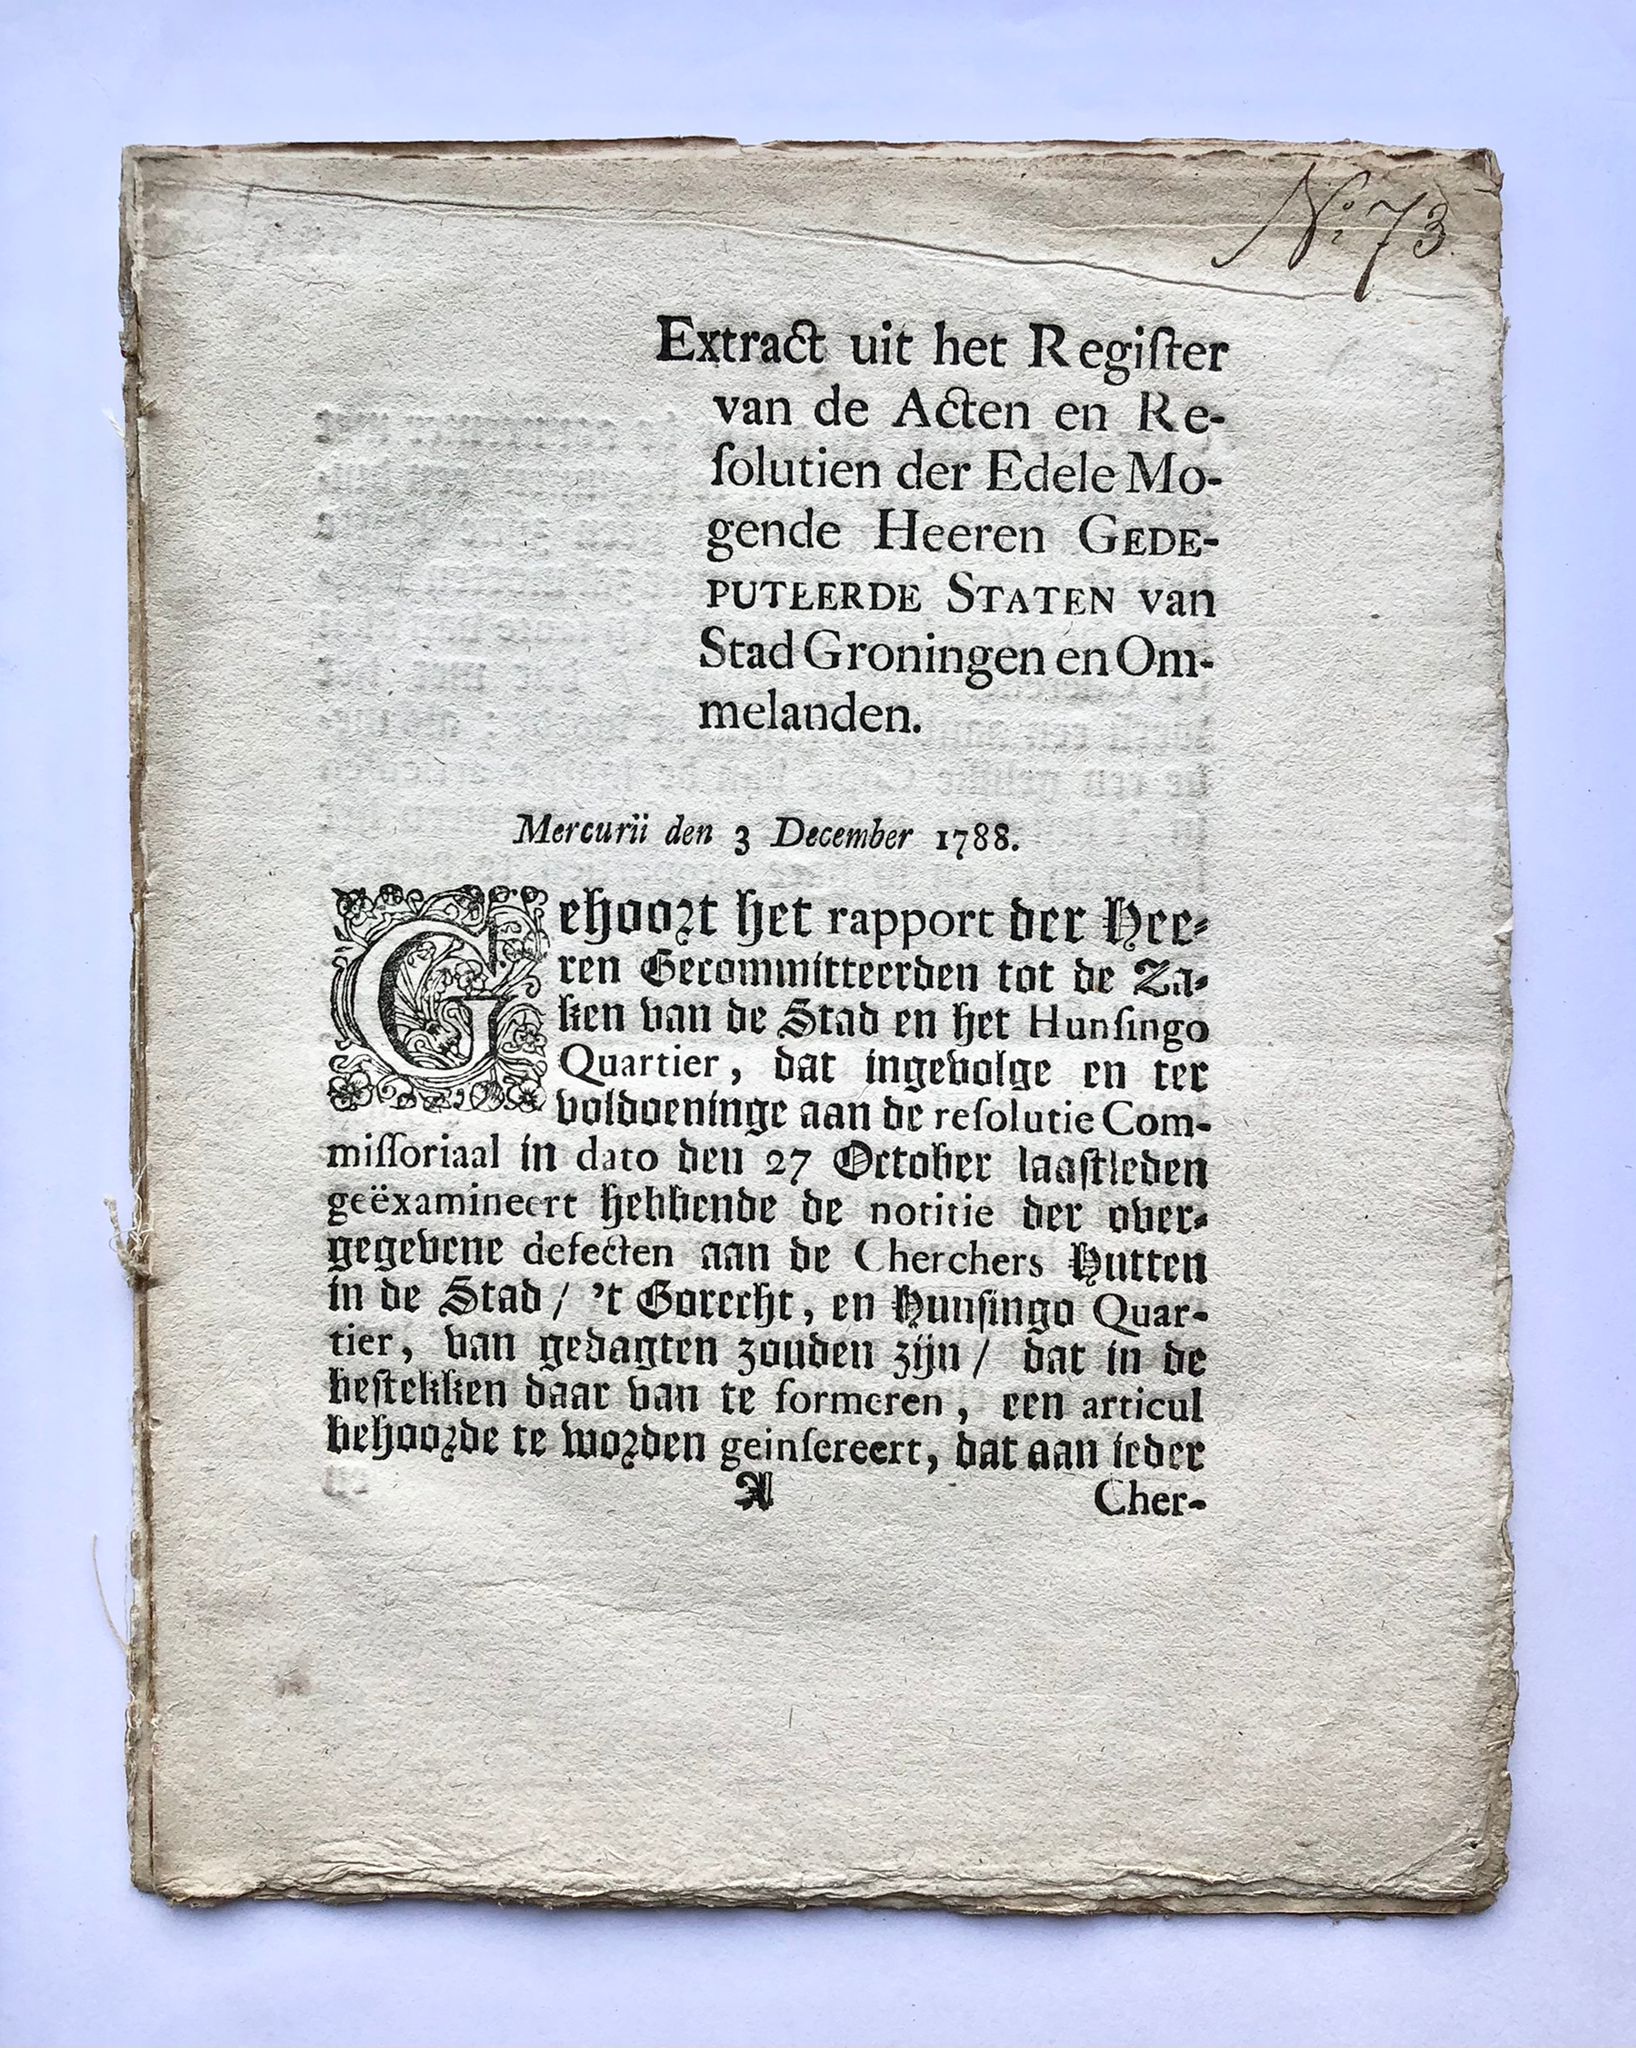 [Groningen [1788]] Extract uit het Register van de Acten en Resolutien der Edele Mogende Heeren Gedeputeerde Staten Groningen en Ommelanden, Mercurii den 3 December 1788, No. 73, [s.l, s.n. [1788], 3 pp.